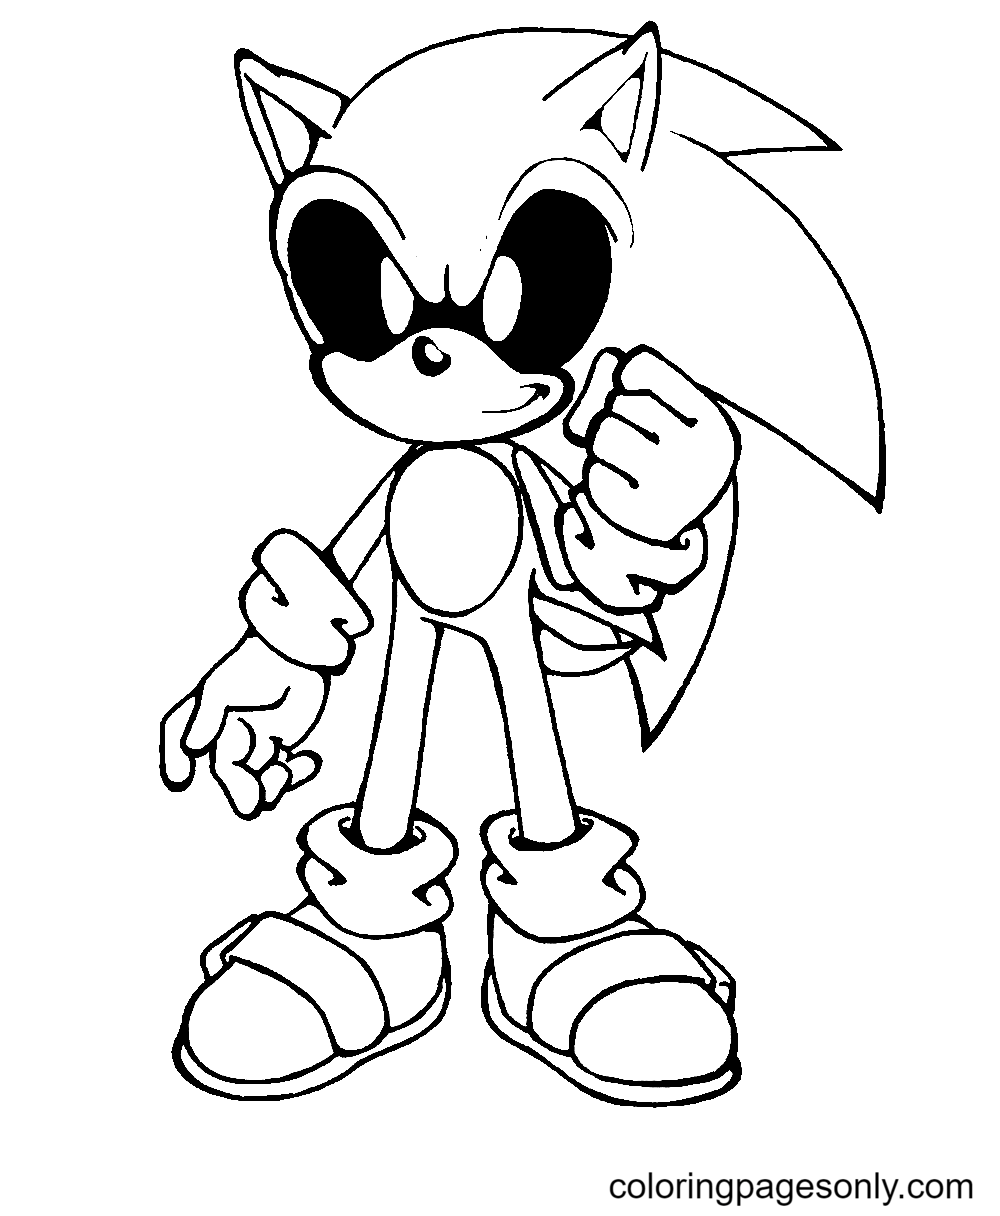 Página para colorear de Sonic Exe para niños gratis